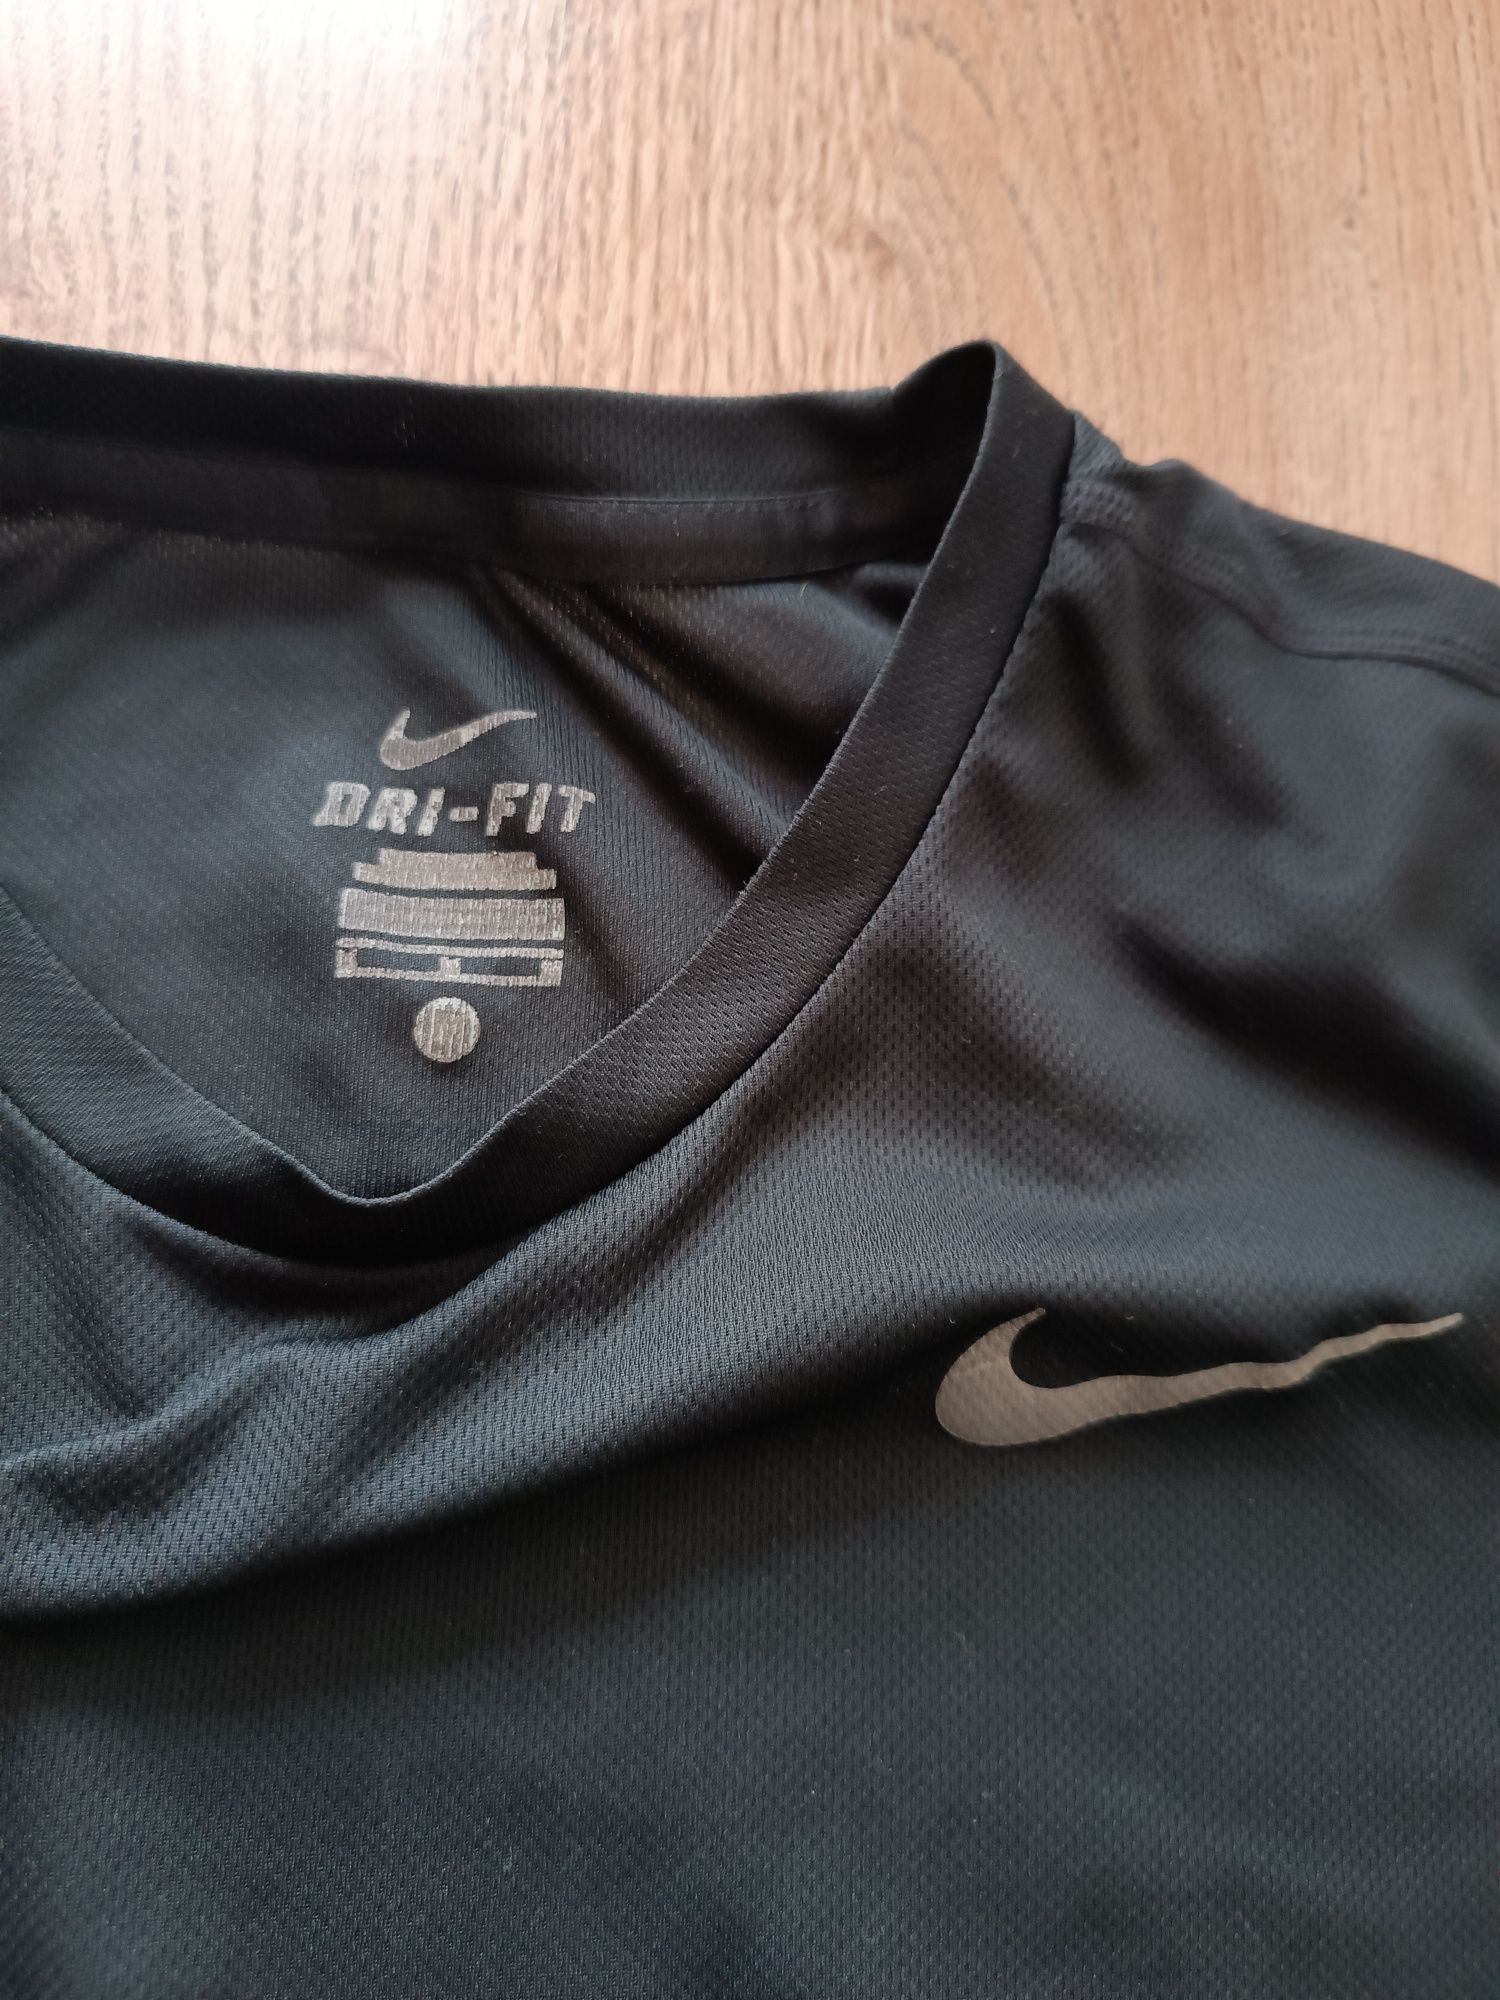 Męska koszulka sportowa termoaktywna, do biegania, Nike Dri-Fit, M